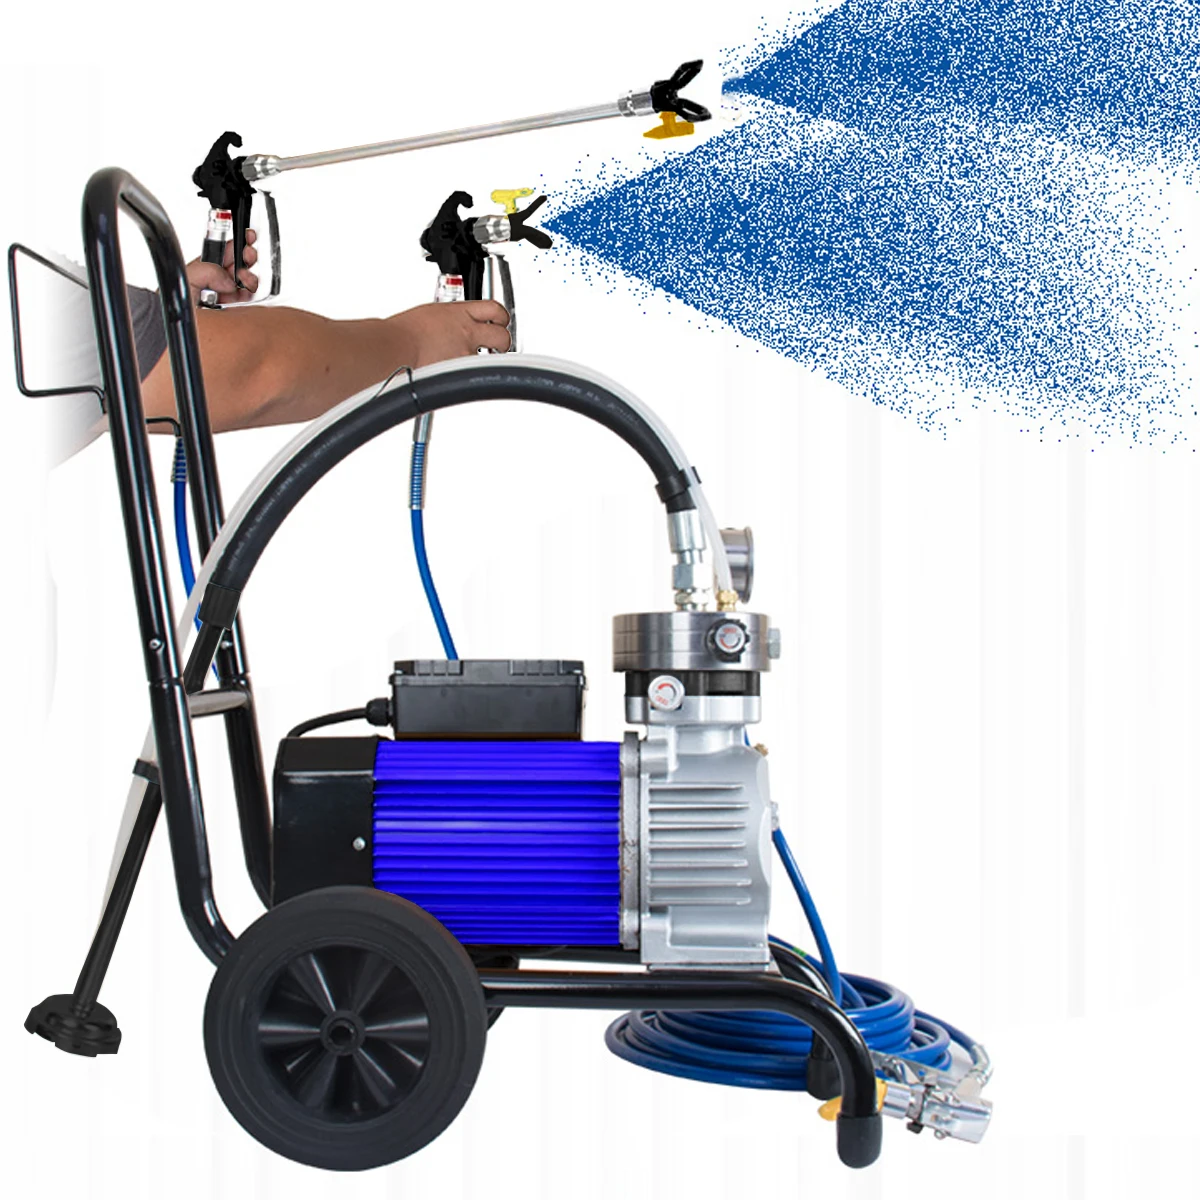 

Made in China High pressure airless spray machine Professional Spraying Gun Sprayer Painting Tool